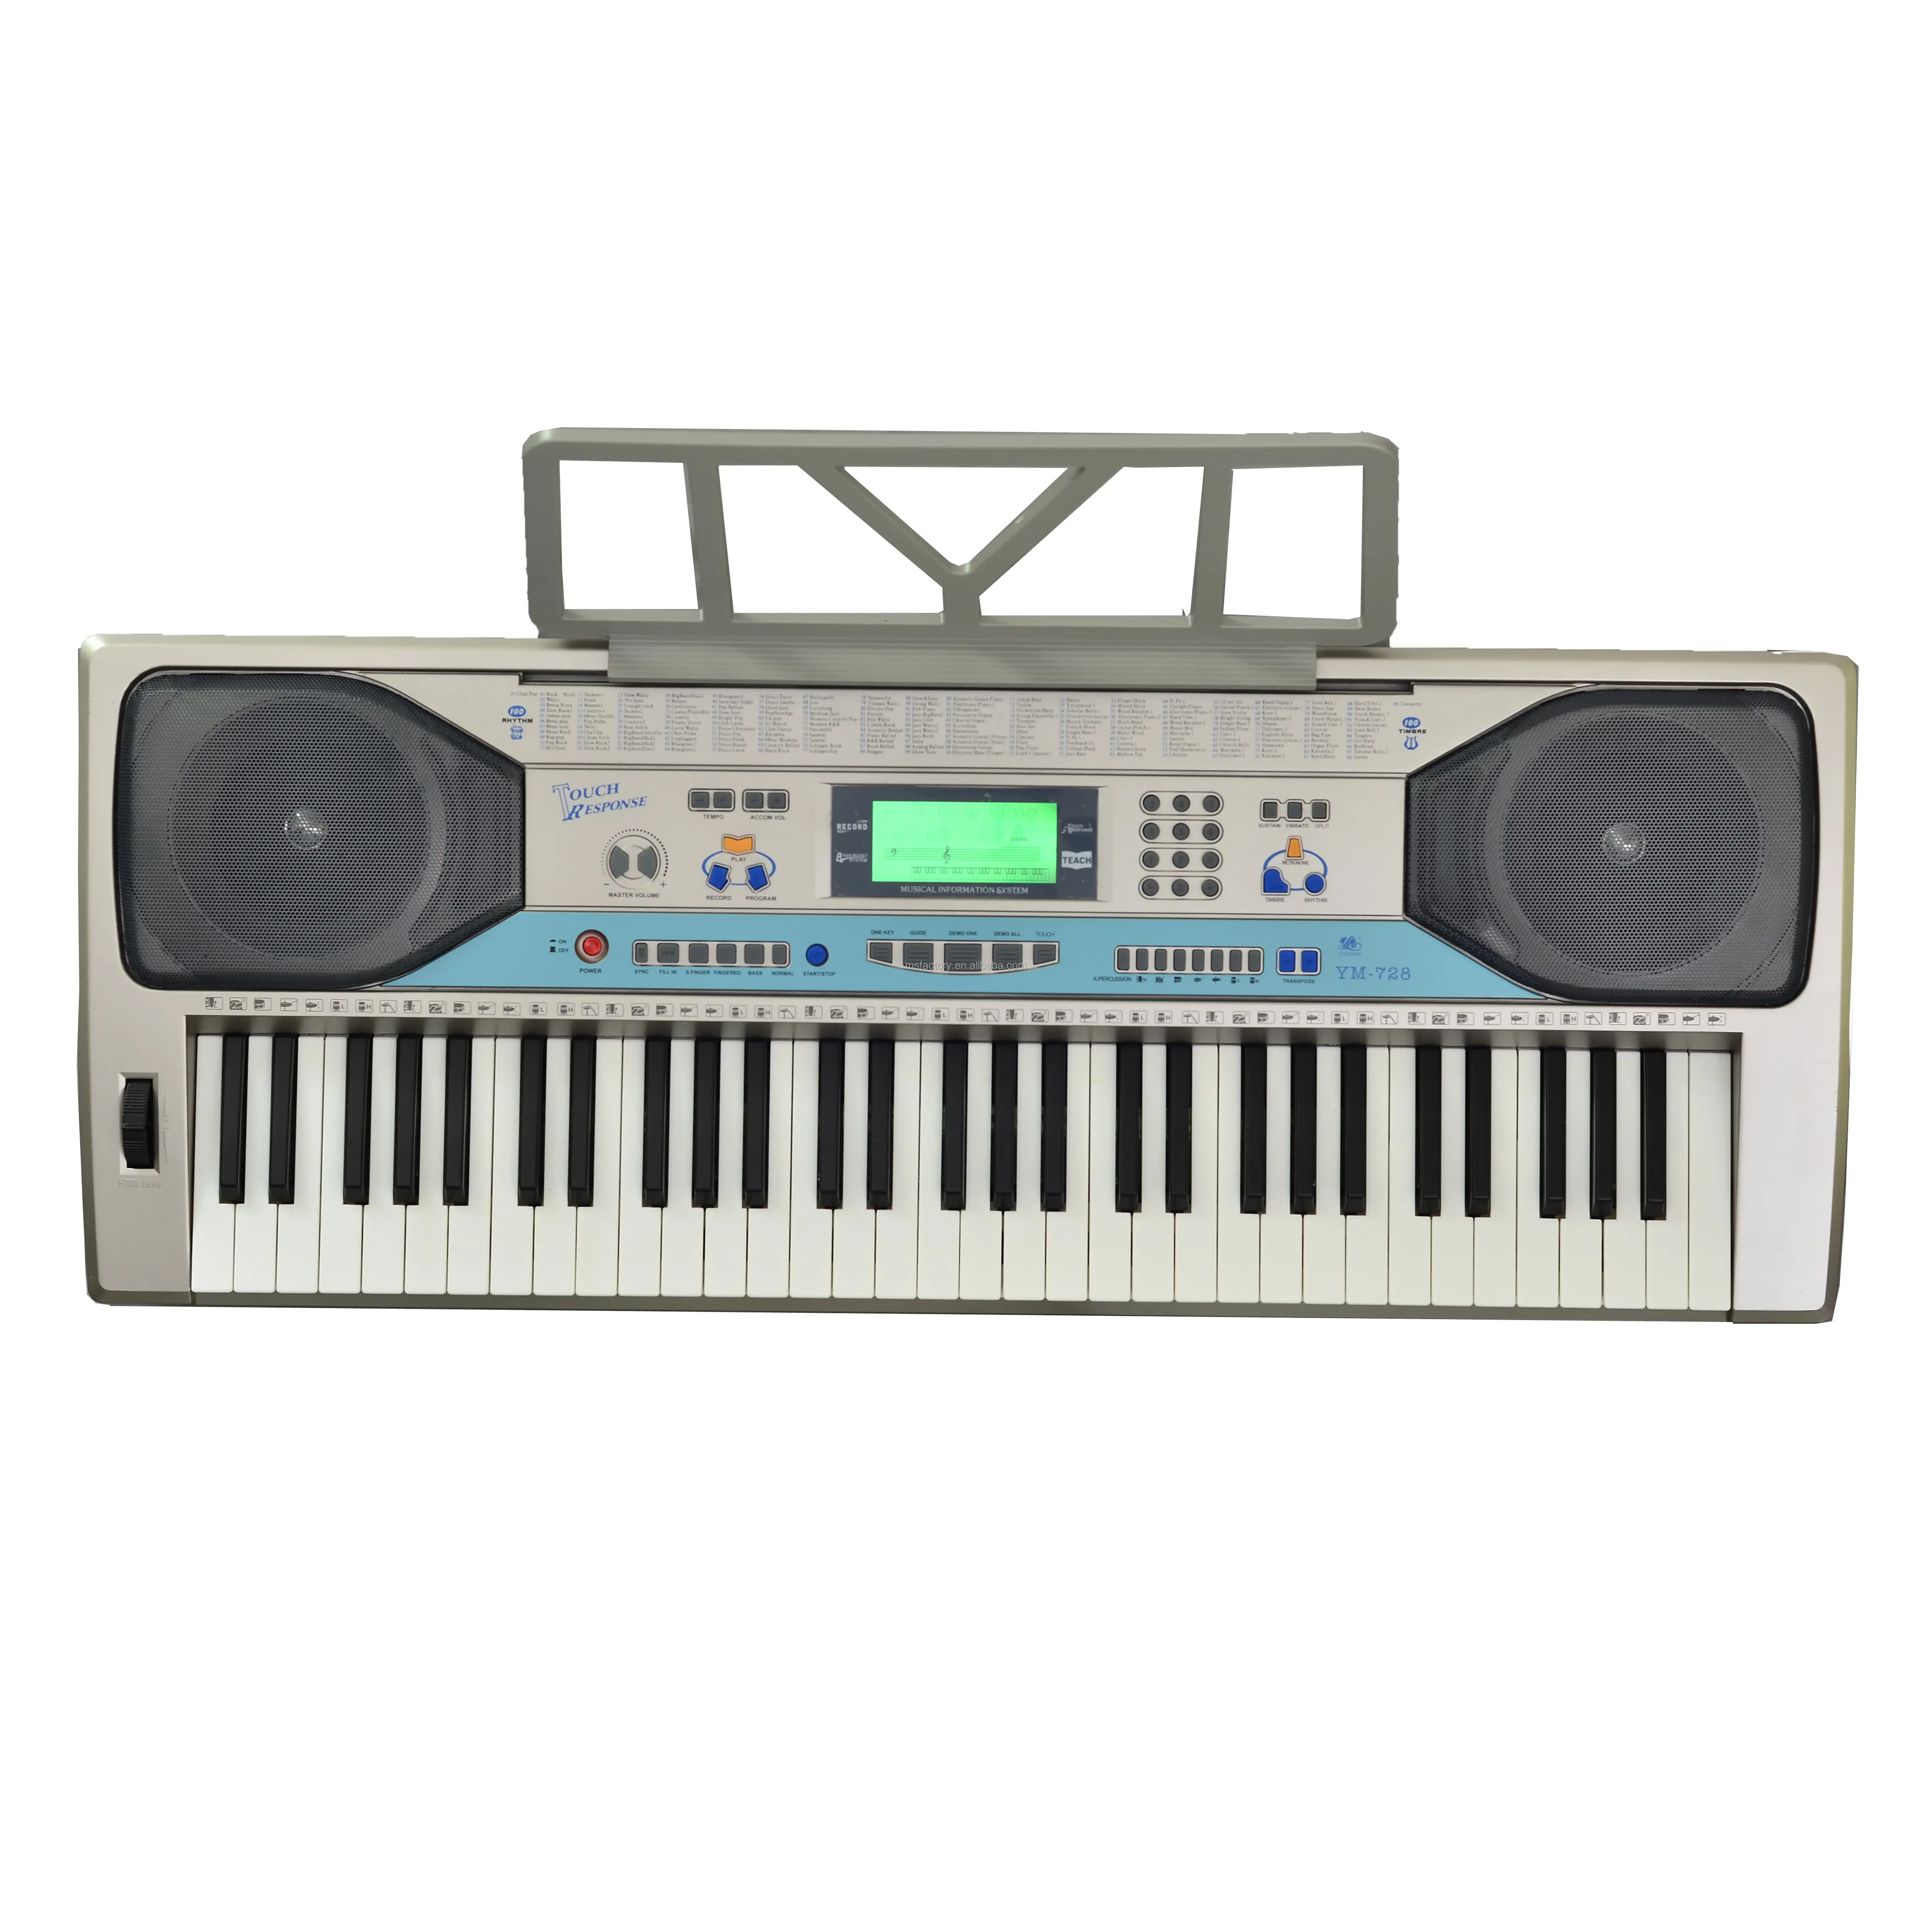 2019 nuevo modelo de instrumento musical de teclado pantalla LCD 61 teclas respuesta táctil teclado